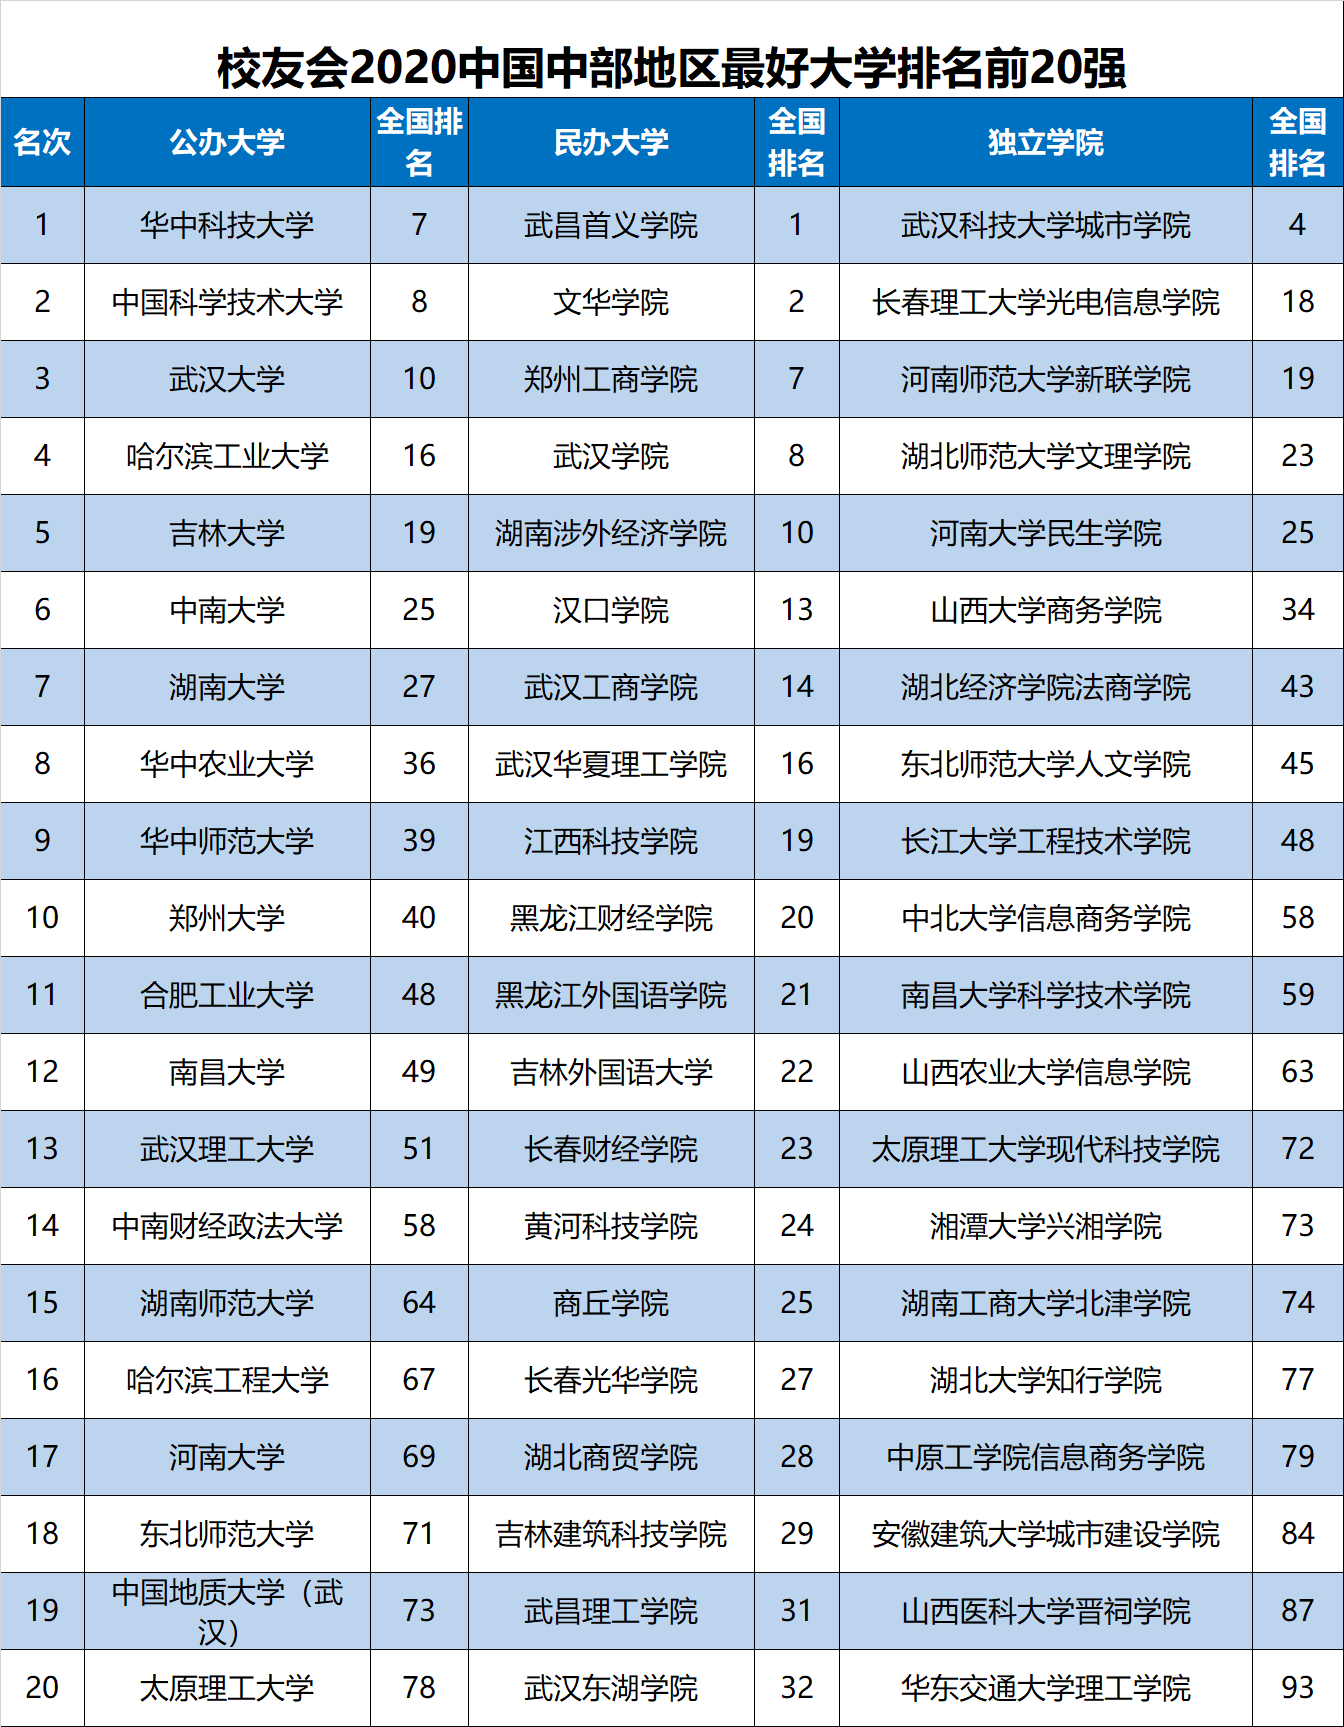 2020武汉学院排名_2020中国大学科研成果排行榜,中南大学排名第8,南大排